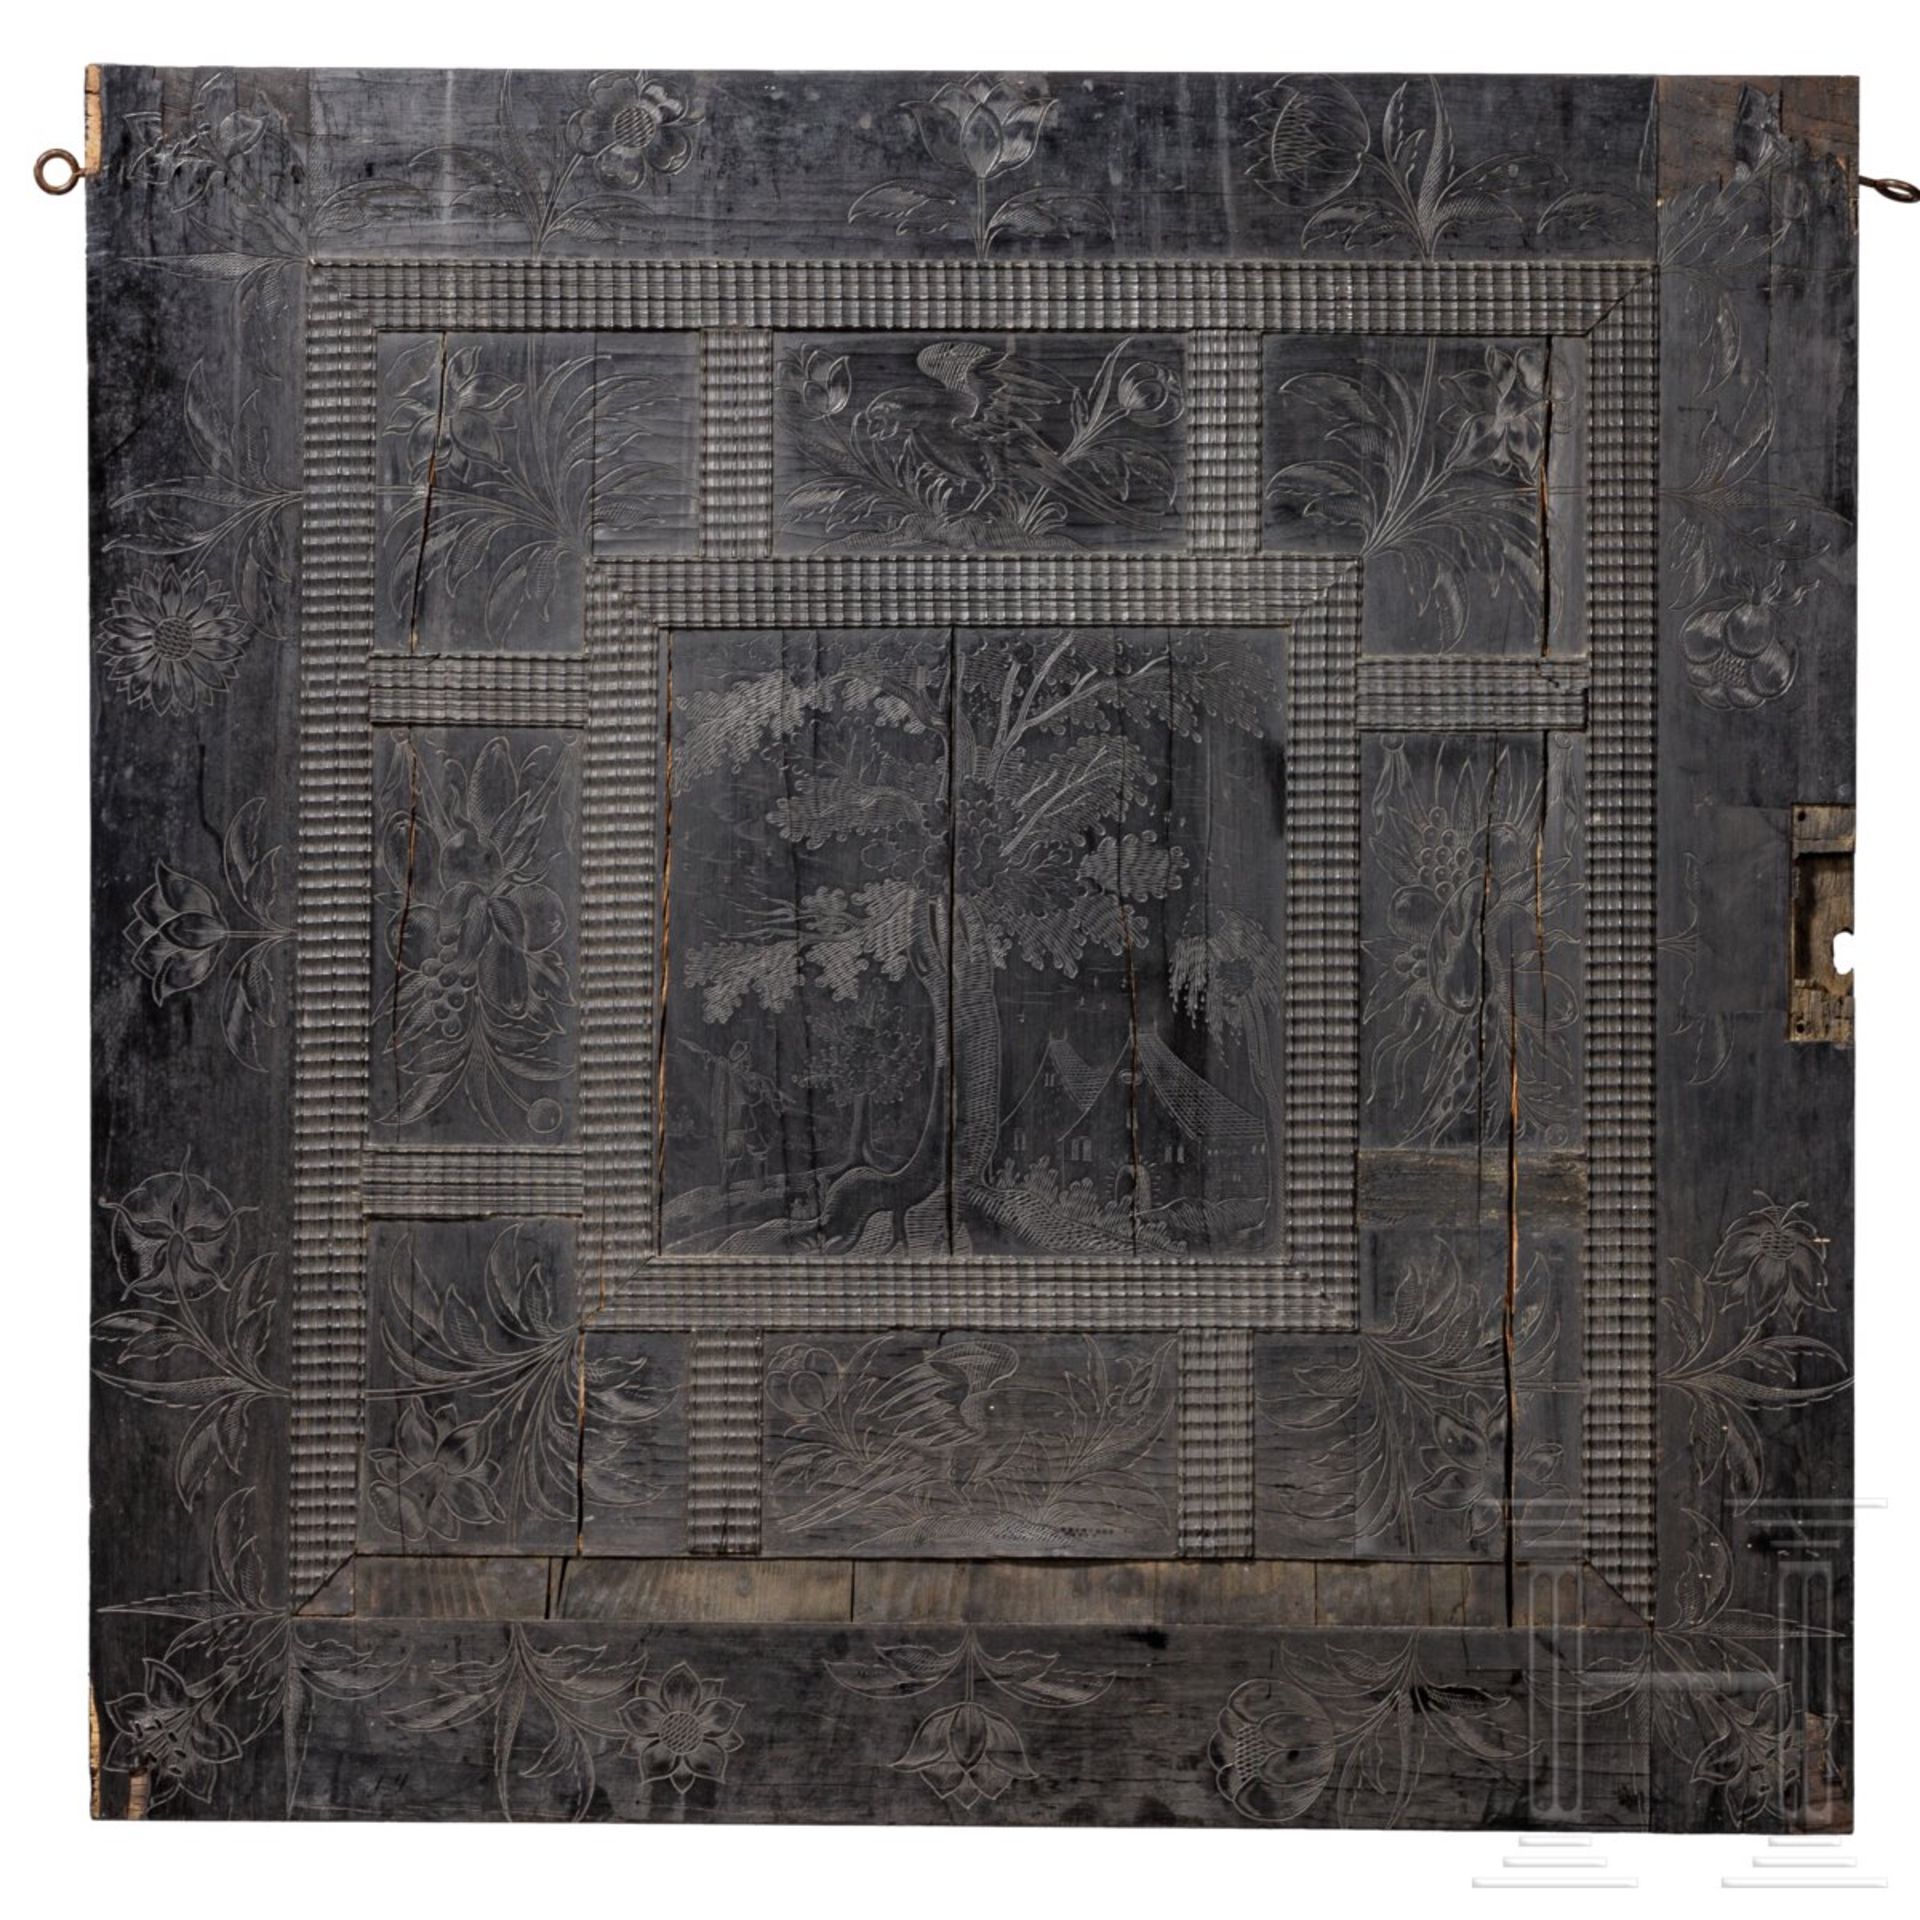 TŸr eines Kabinettschrankes, flŠmisch, um 1640 - Image 8 of 8